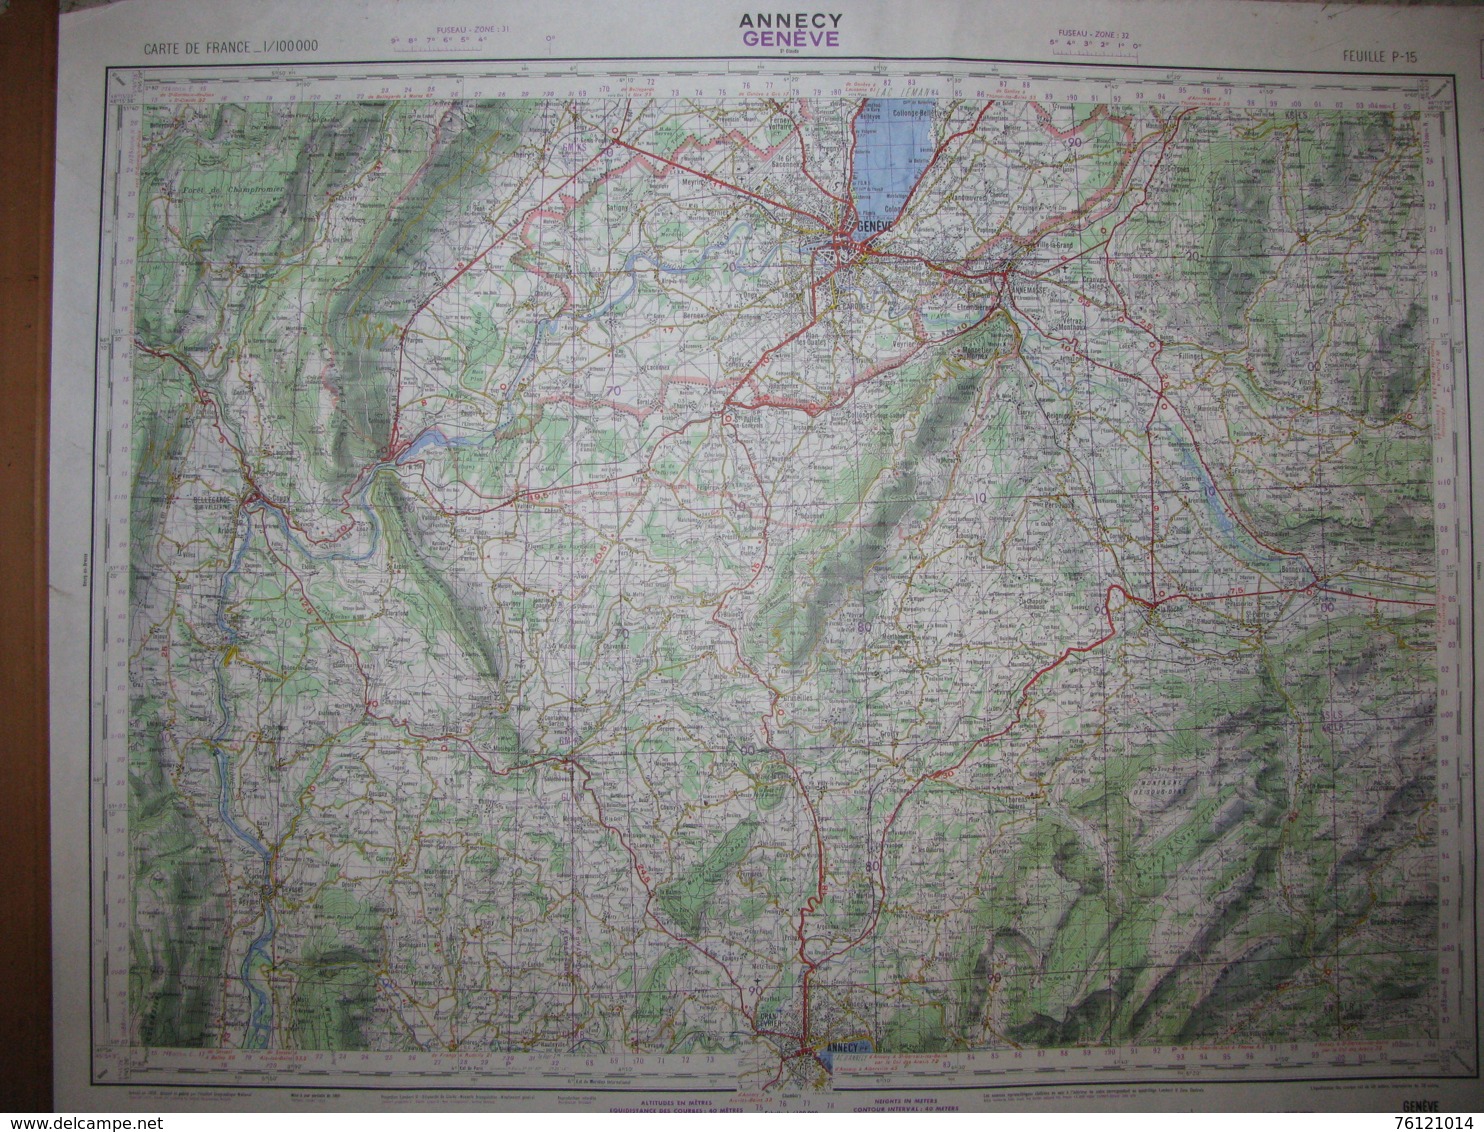 Annecy Genève Carte état Major 1/100000 1960 Bellegarde Bonneville Viu Zbrizon - Cartes Topographiques